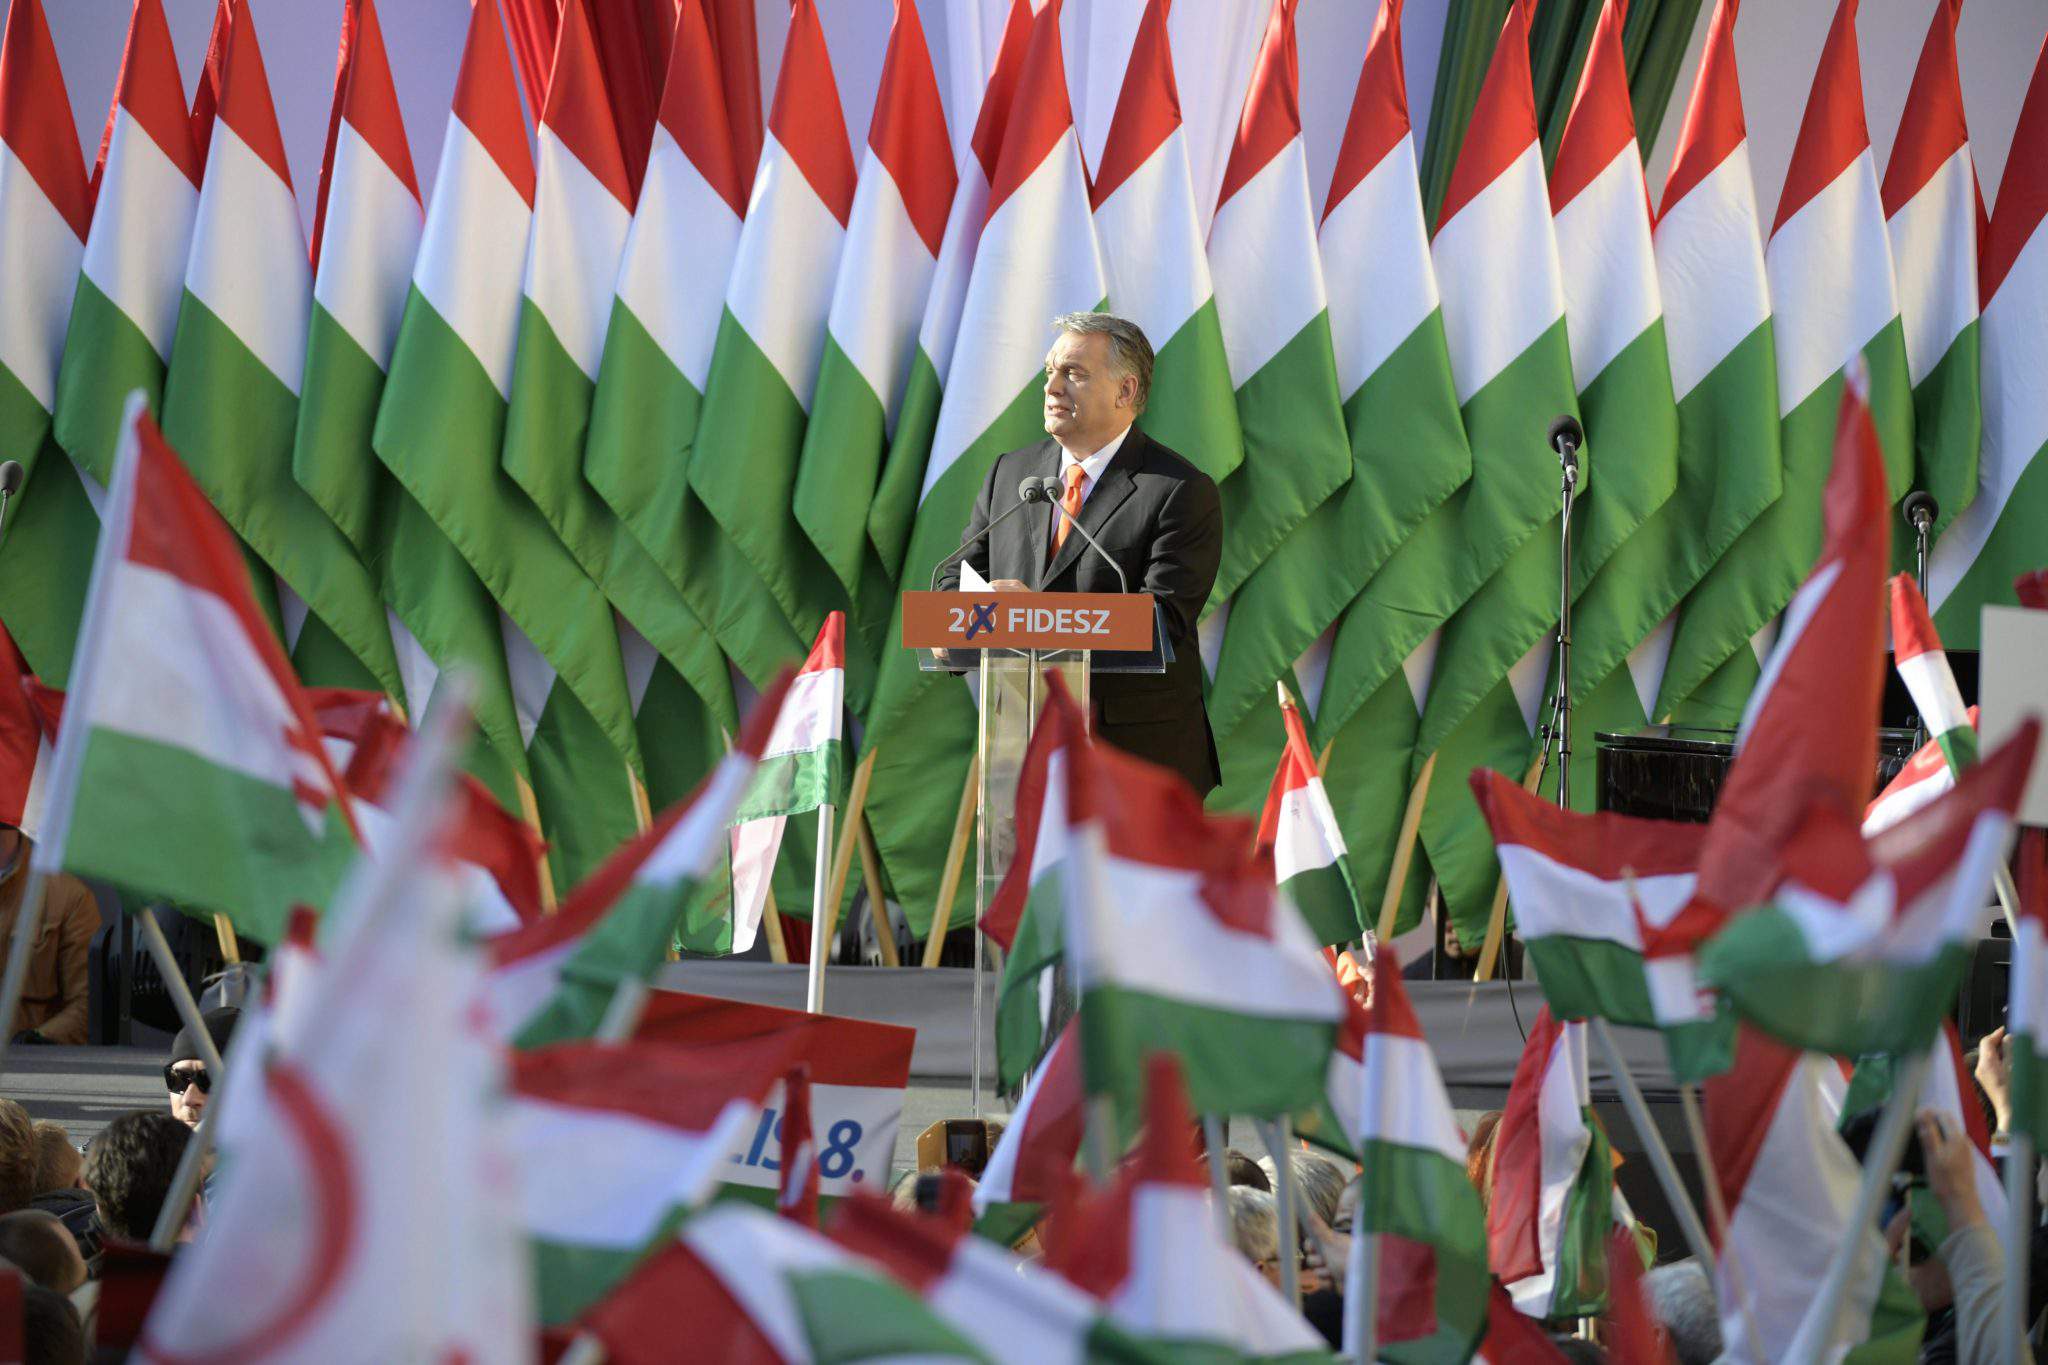 2018 年匈牙利大選 Fidesz Viktor Orbán